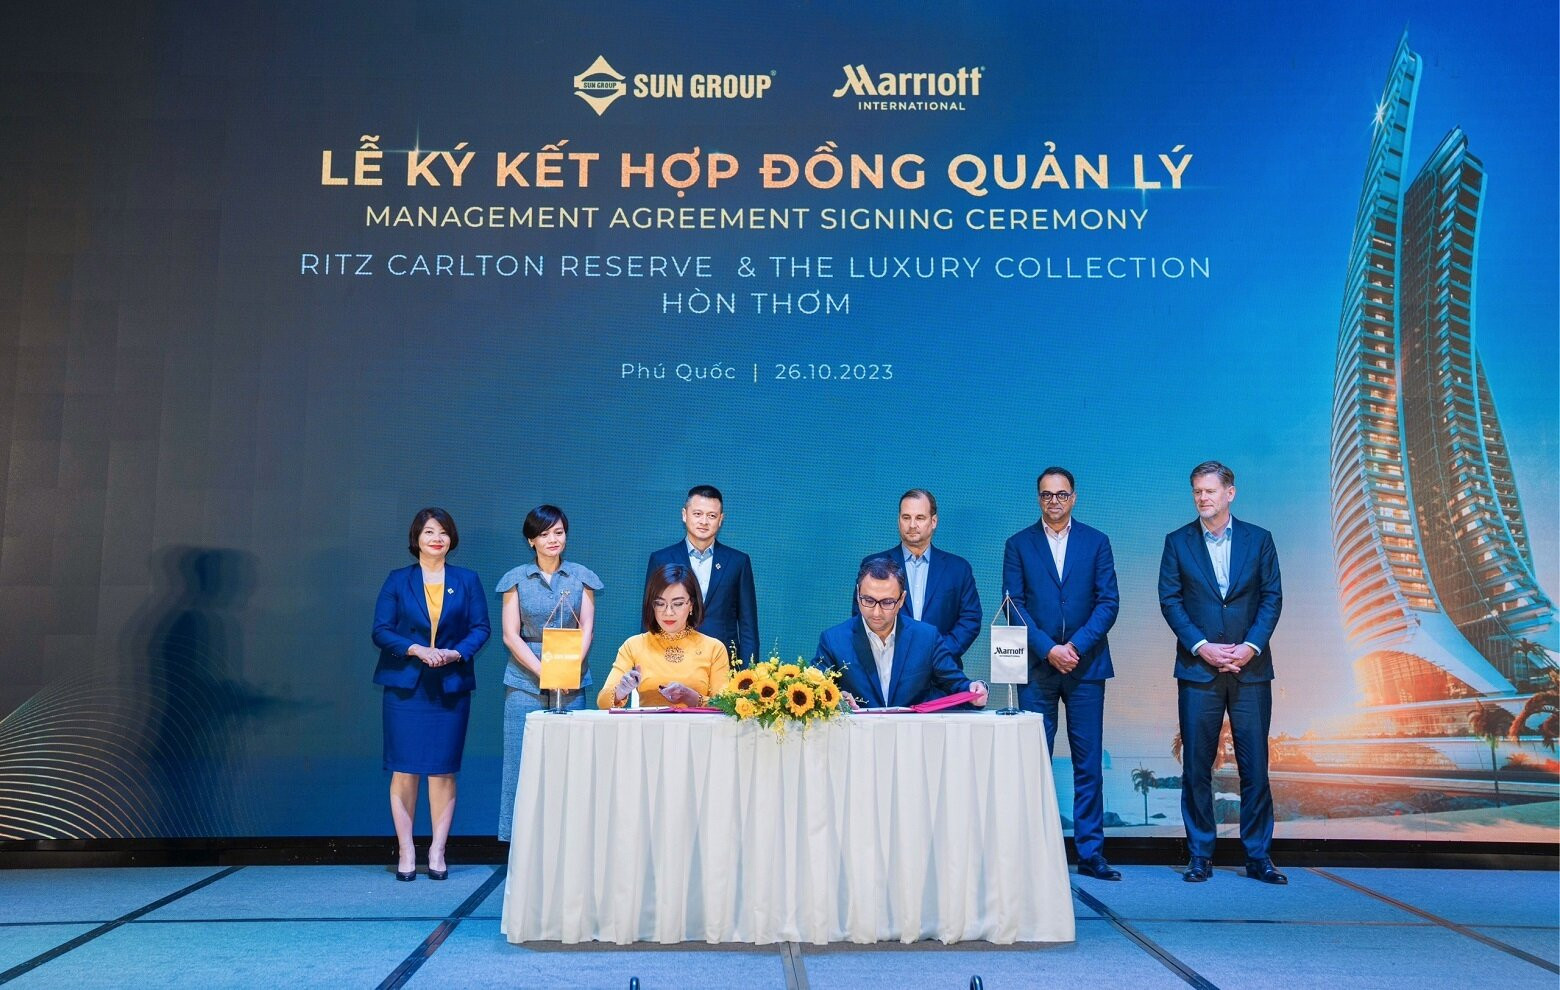 Sun Group cùng Marriott International chính thức ký kết quản lý 2 dự án nghỉ dưỡng cao cấp tại Hòn Thơm.